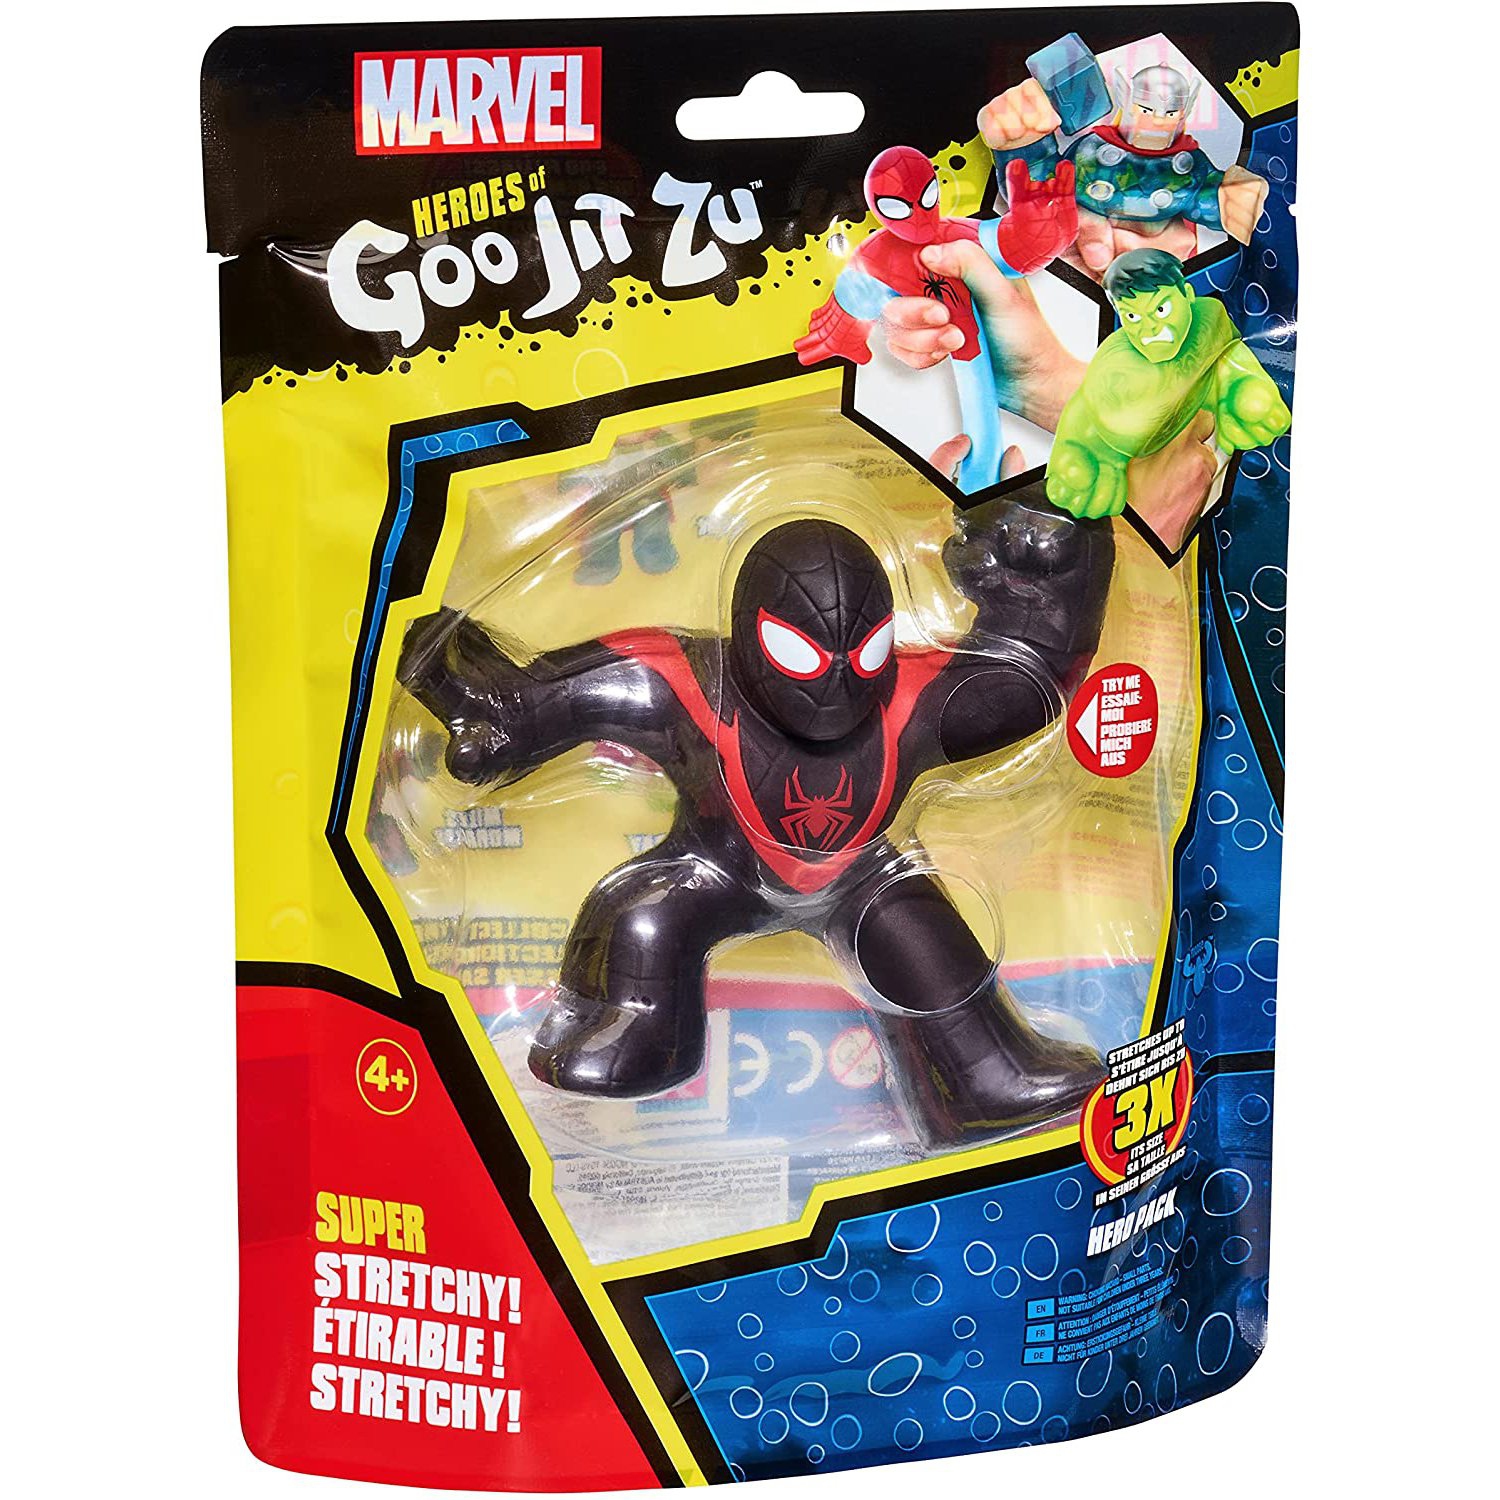 Heroes of Goo Jit Zu - Marvel Hero Pack - Miles Morales Spider-Man